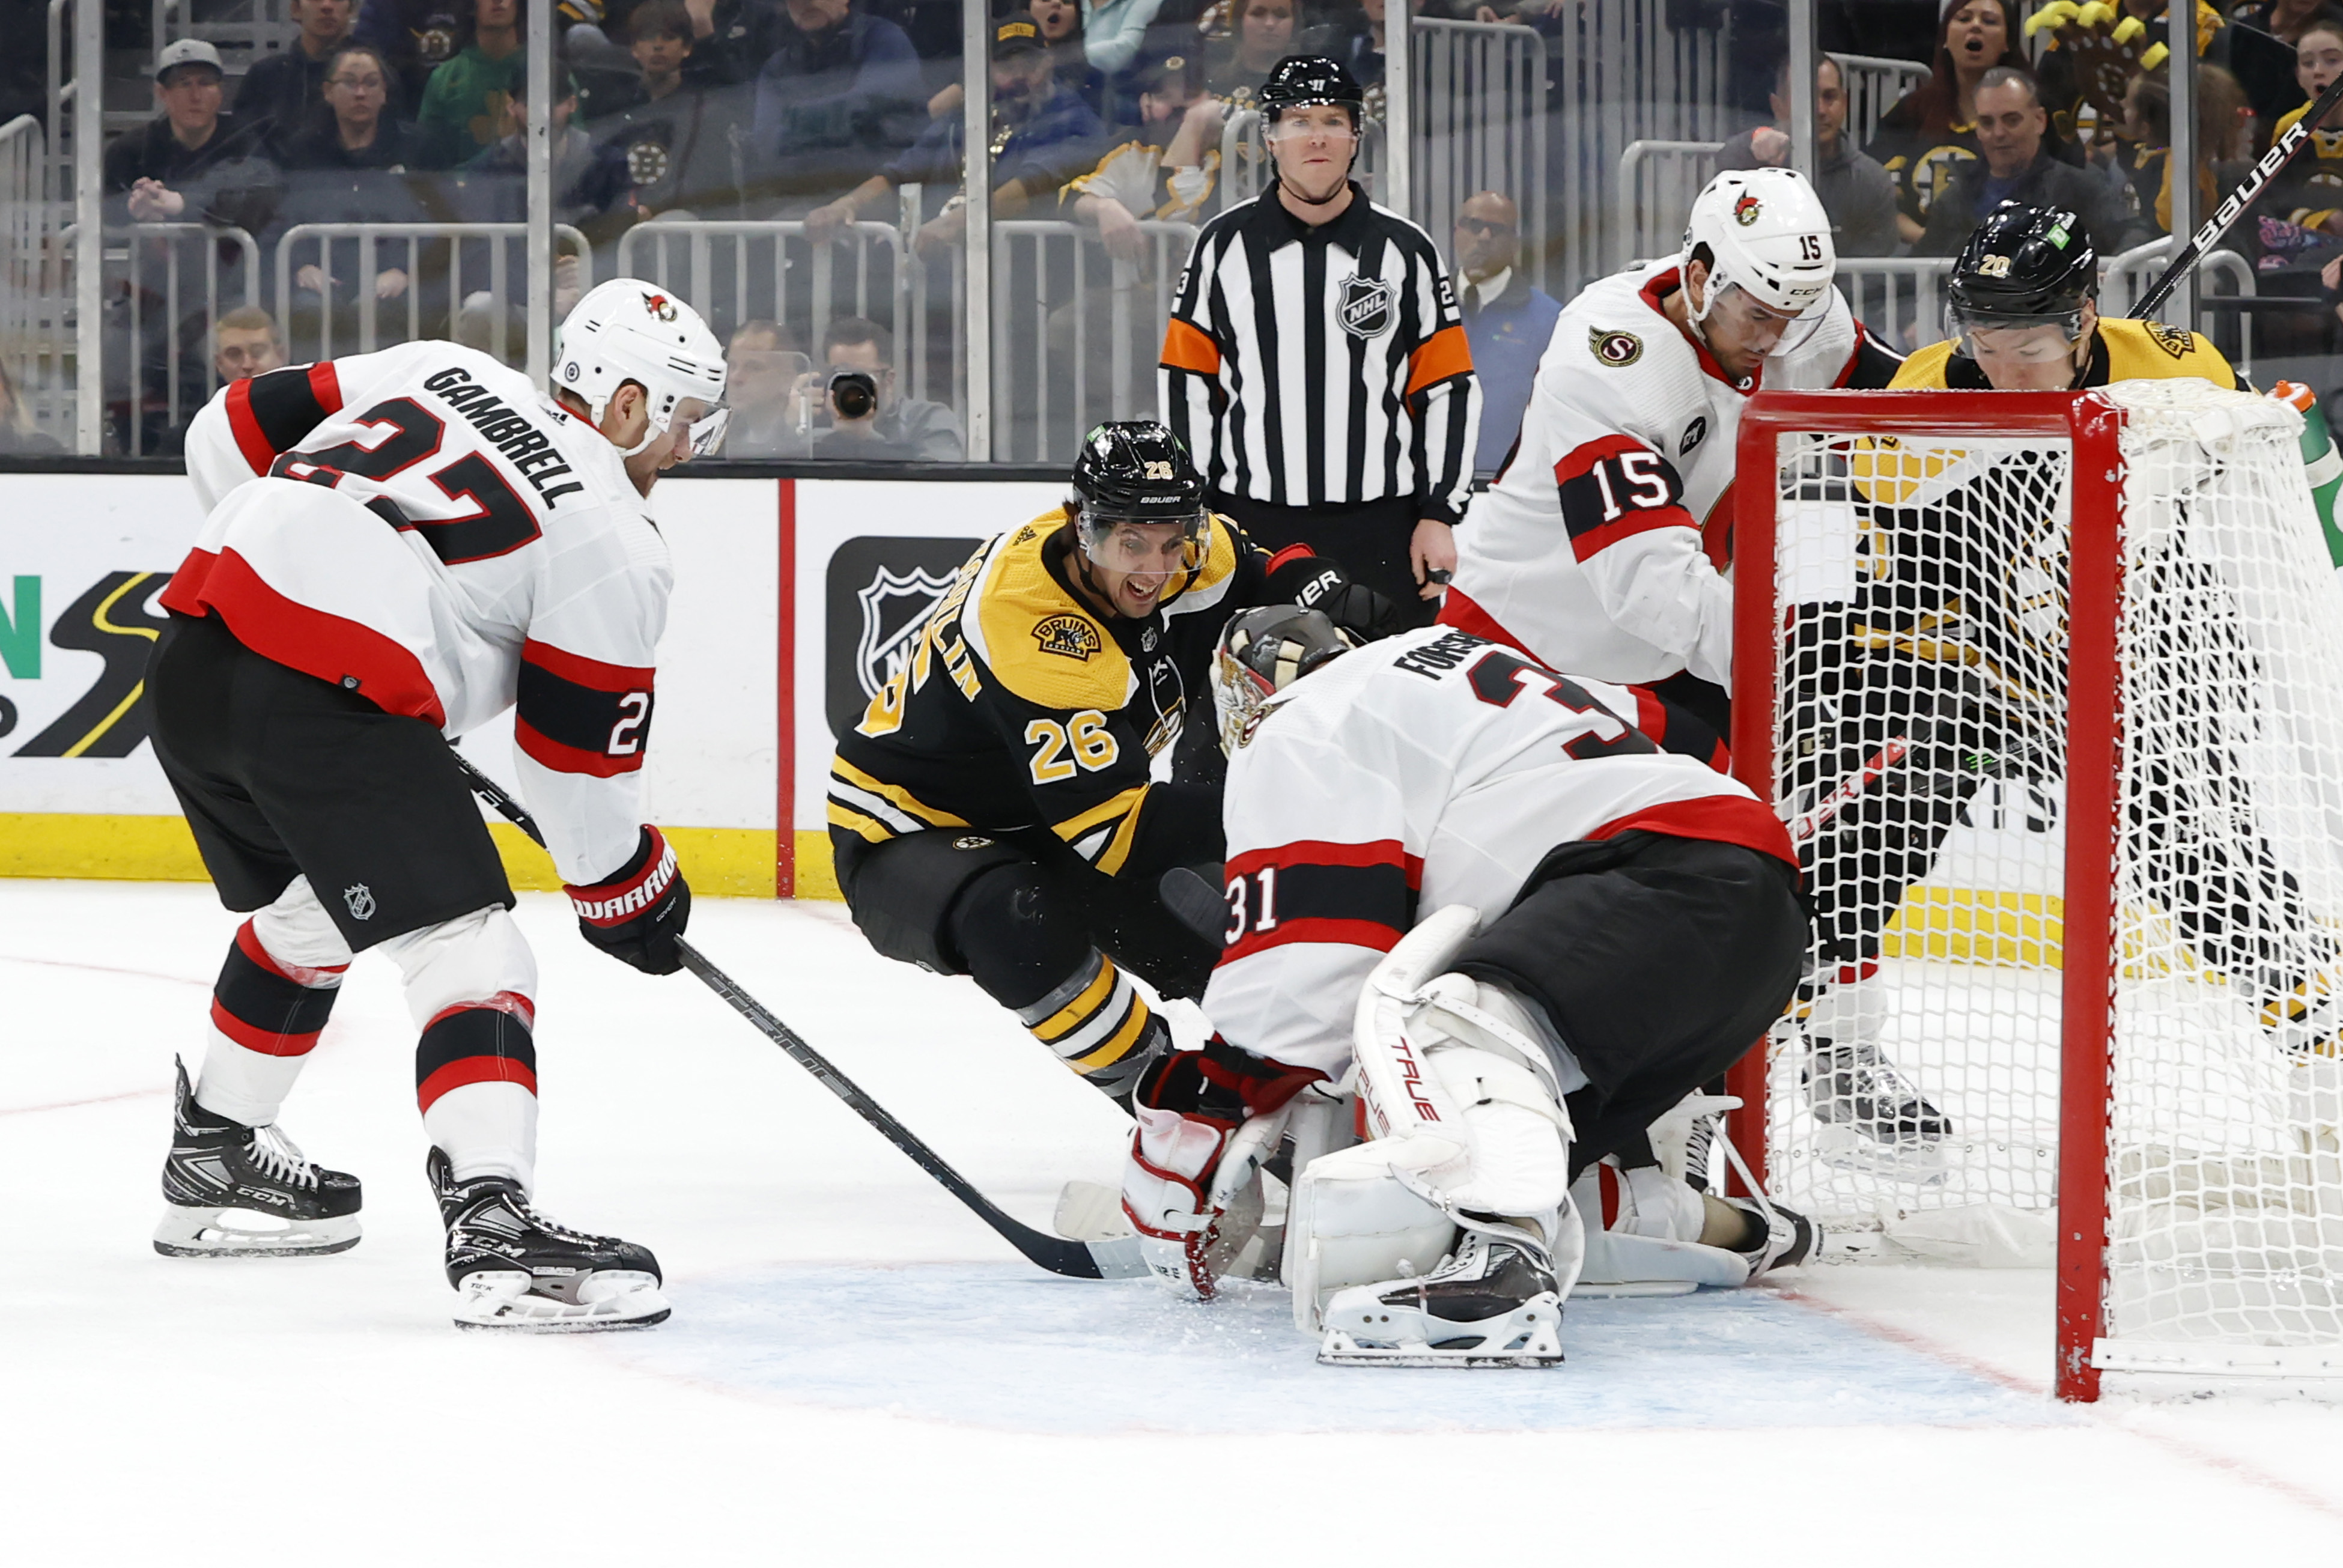 NHL: APR 14 Senators at Bruins